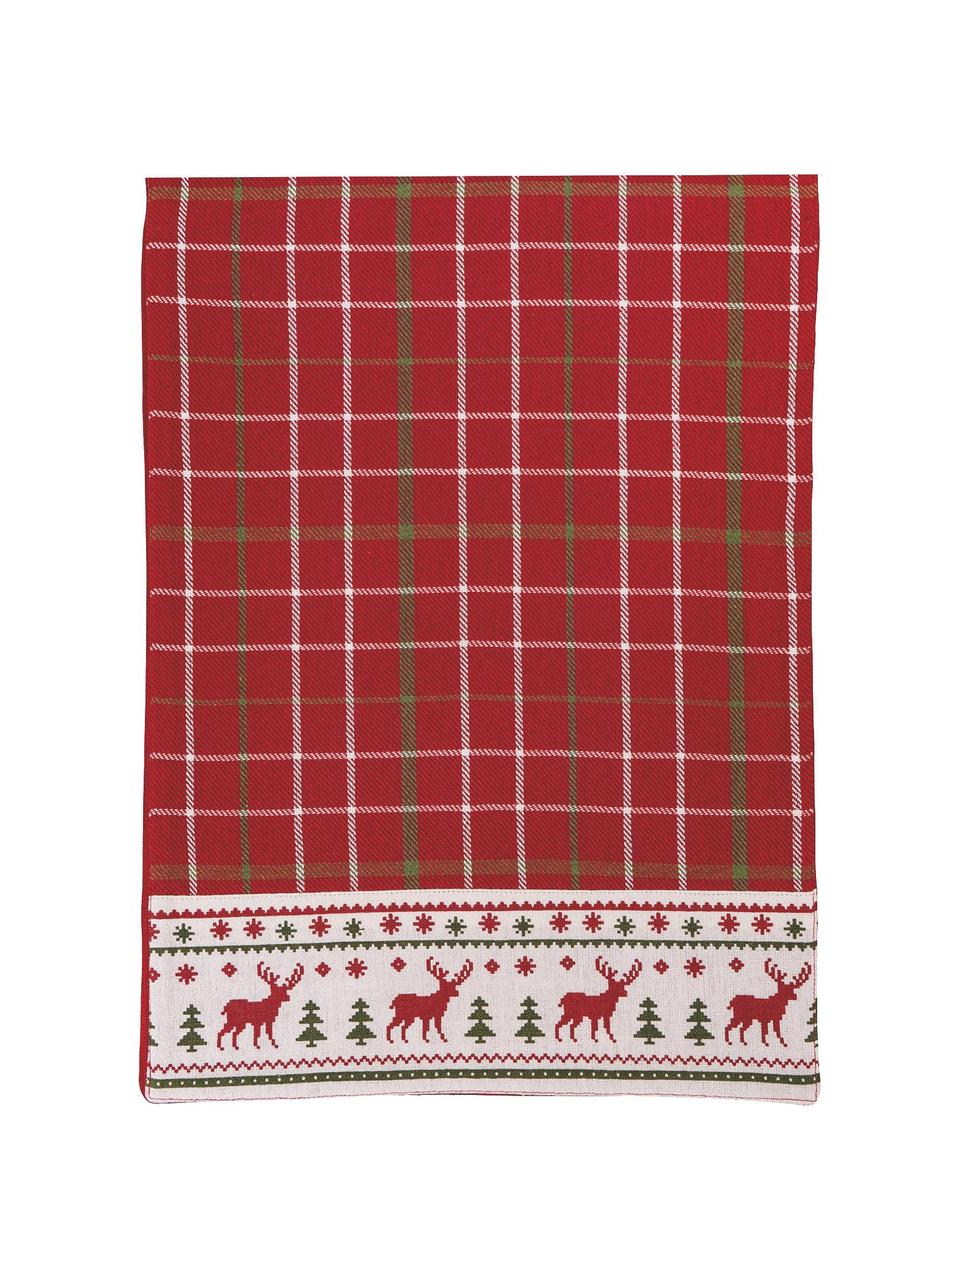 Baumwoll-Tischläufer Tartan mit Weihnachtsmuster, 100% Baumwolle, Rot, Mehrfarbig, B 33 x L 178 cm